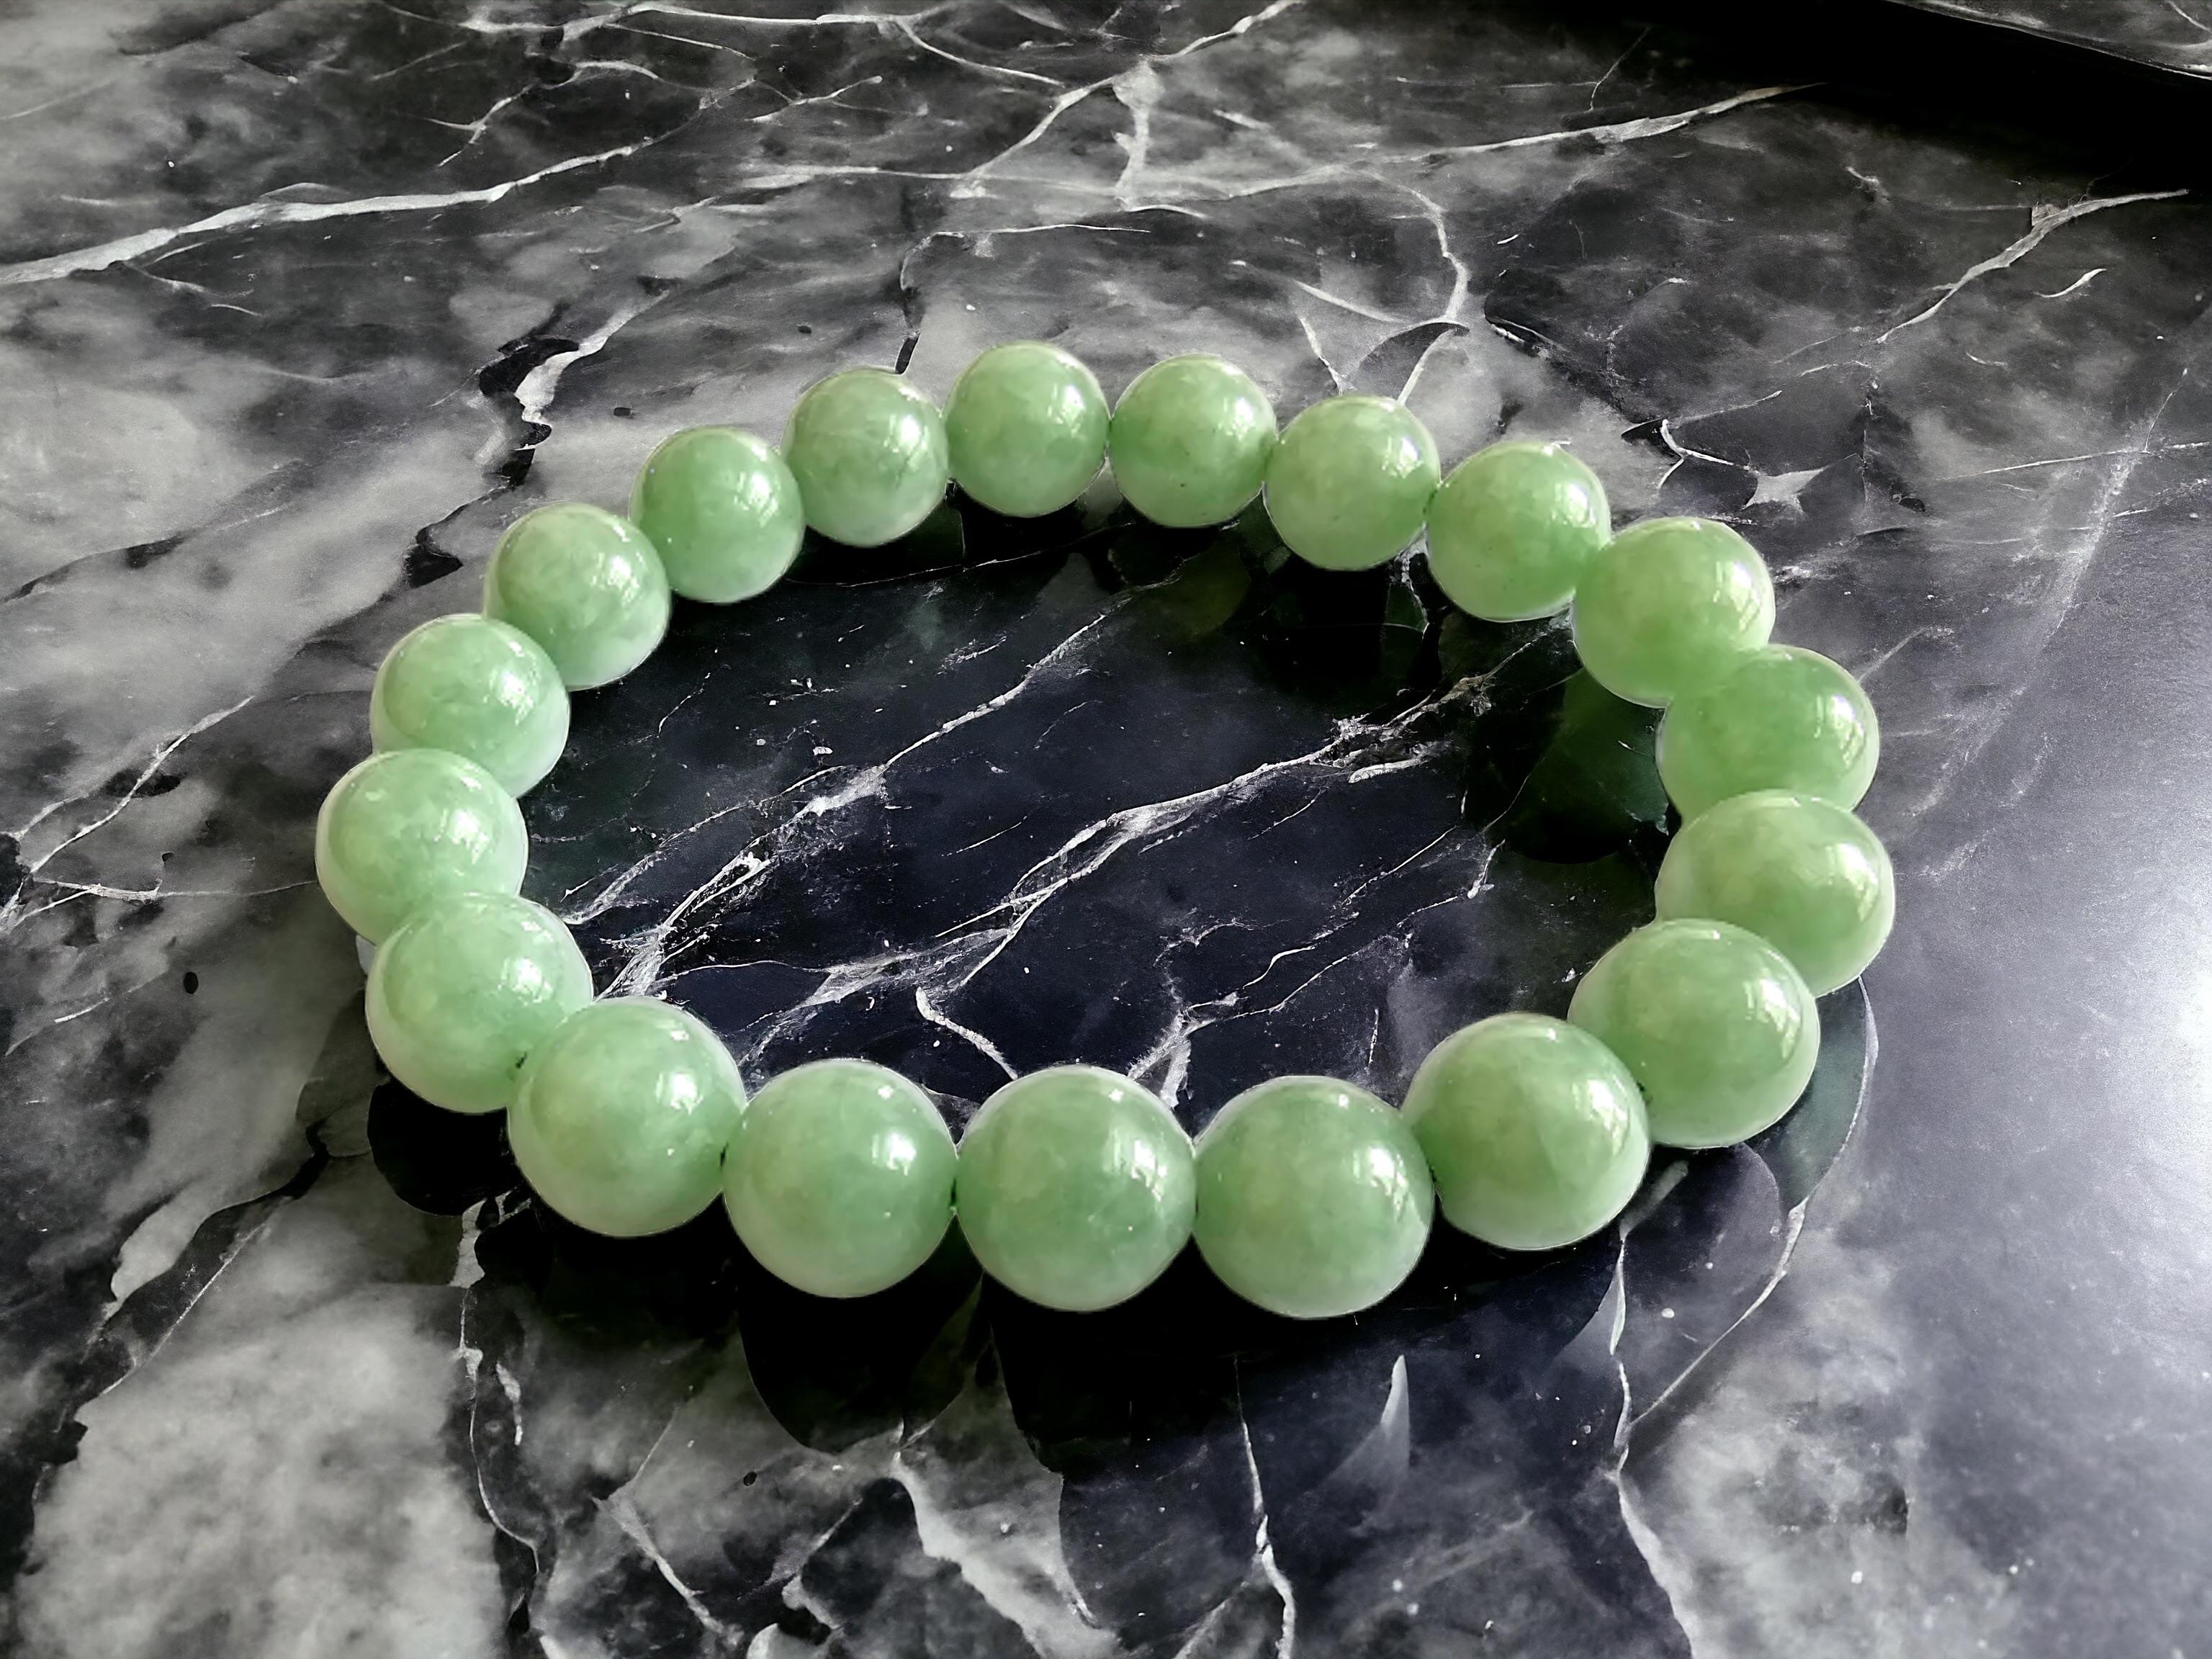 Bracelet Impérial Vert Birman A-Jade Jadéite (10mm Chaque x 19 perles) 05002

10 mm chacune, 19 perles de jadéite verte parfaitement calibrées. Certaines des teintes naturelles les plus rares de la jadéite A, calibrées en vert, créent un bracelet